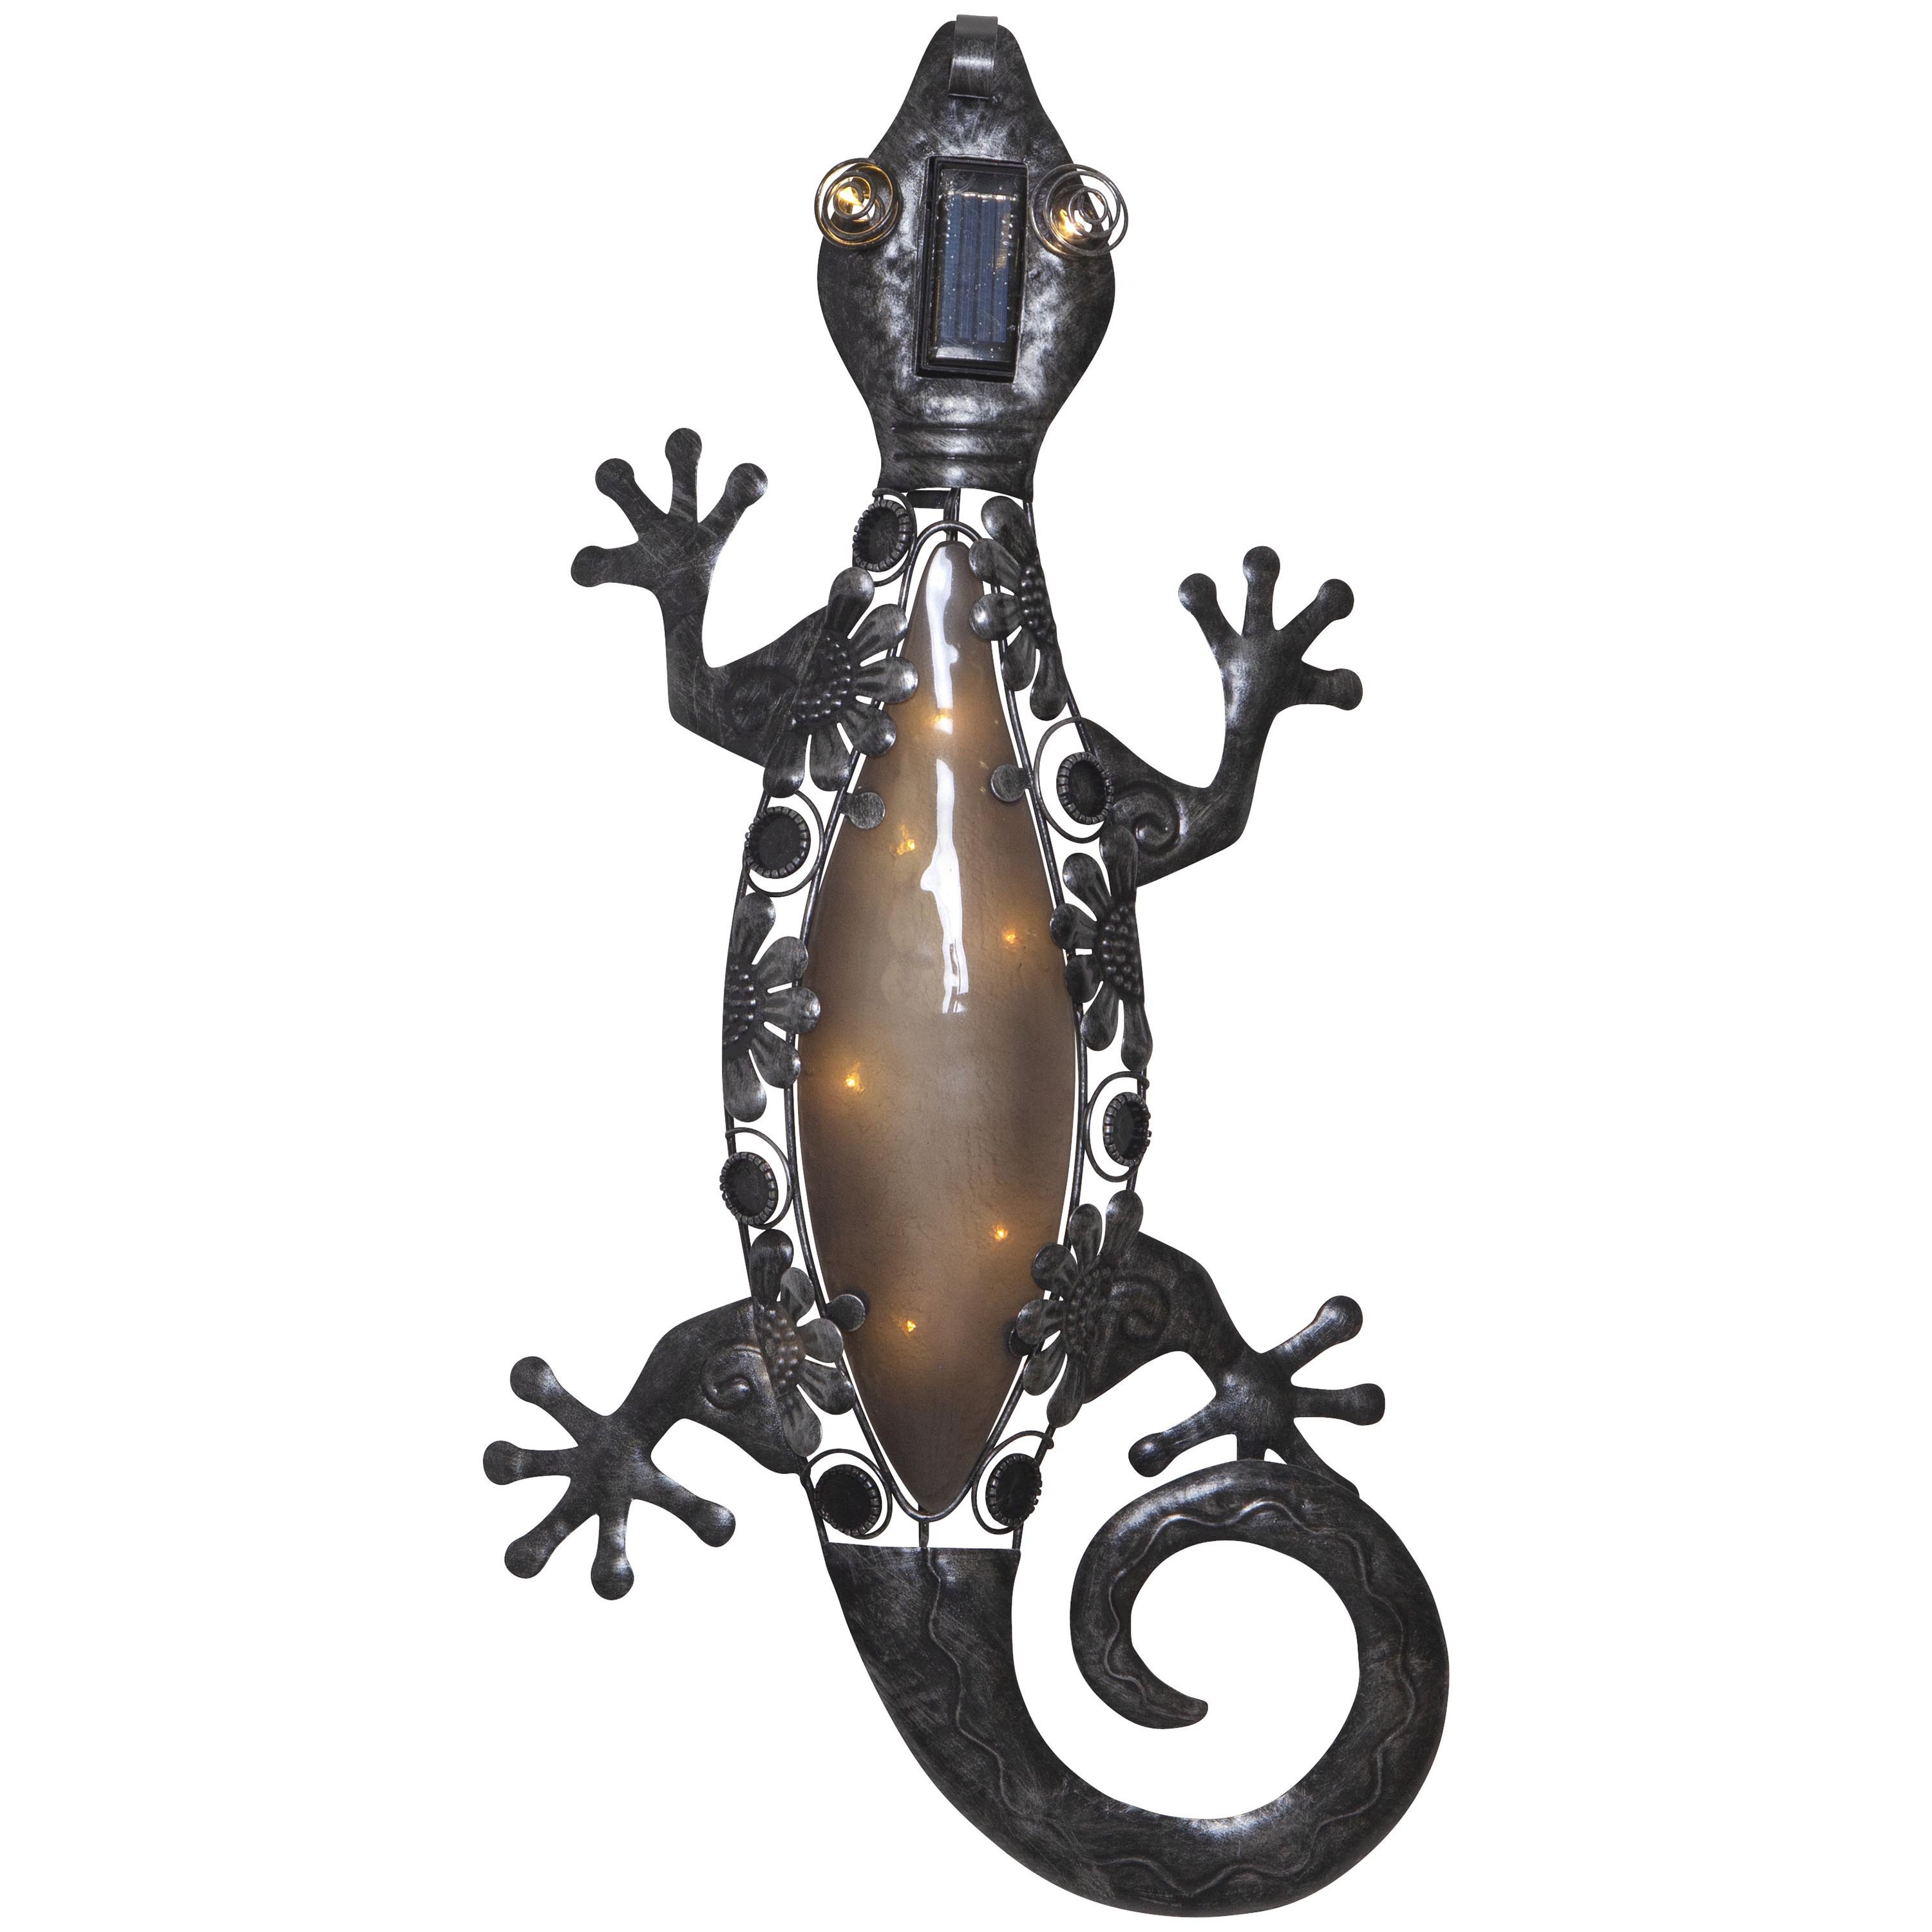 STAR TRADING LED Dekolicht Deko-Wandlicht Gecko, Deko-Wandlicht Gecko